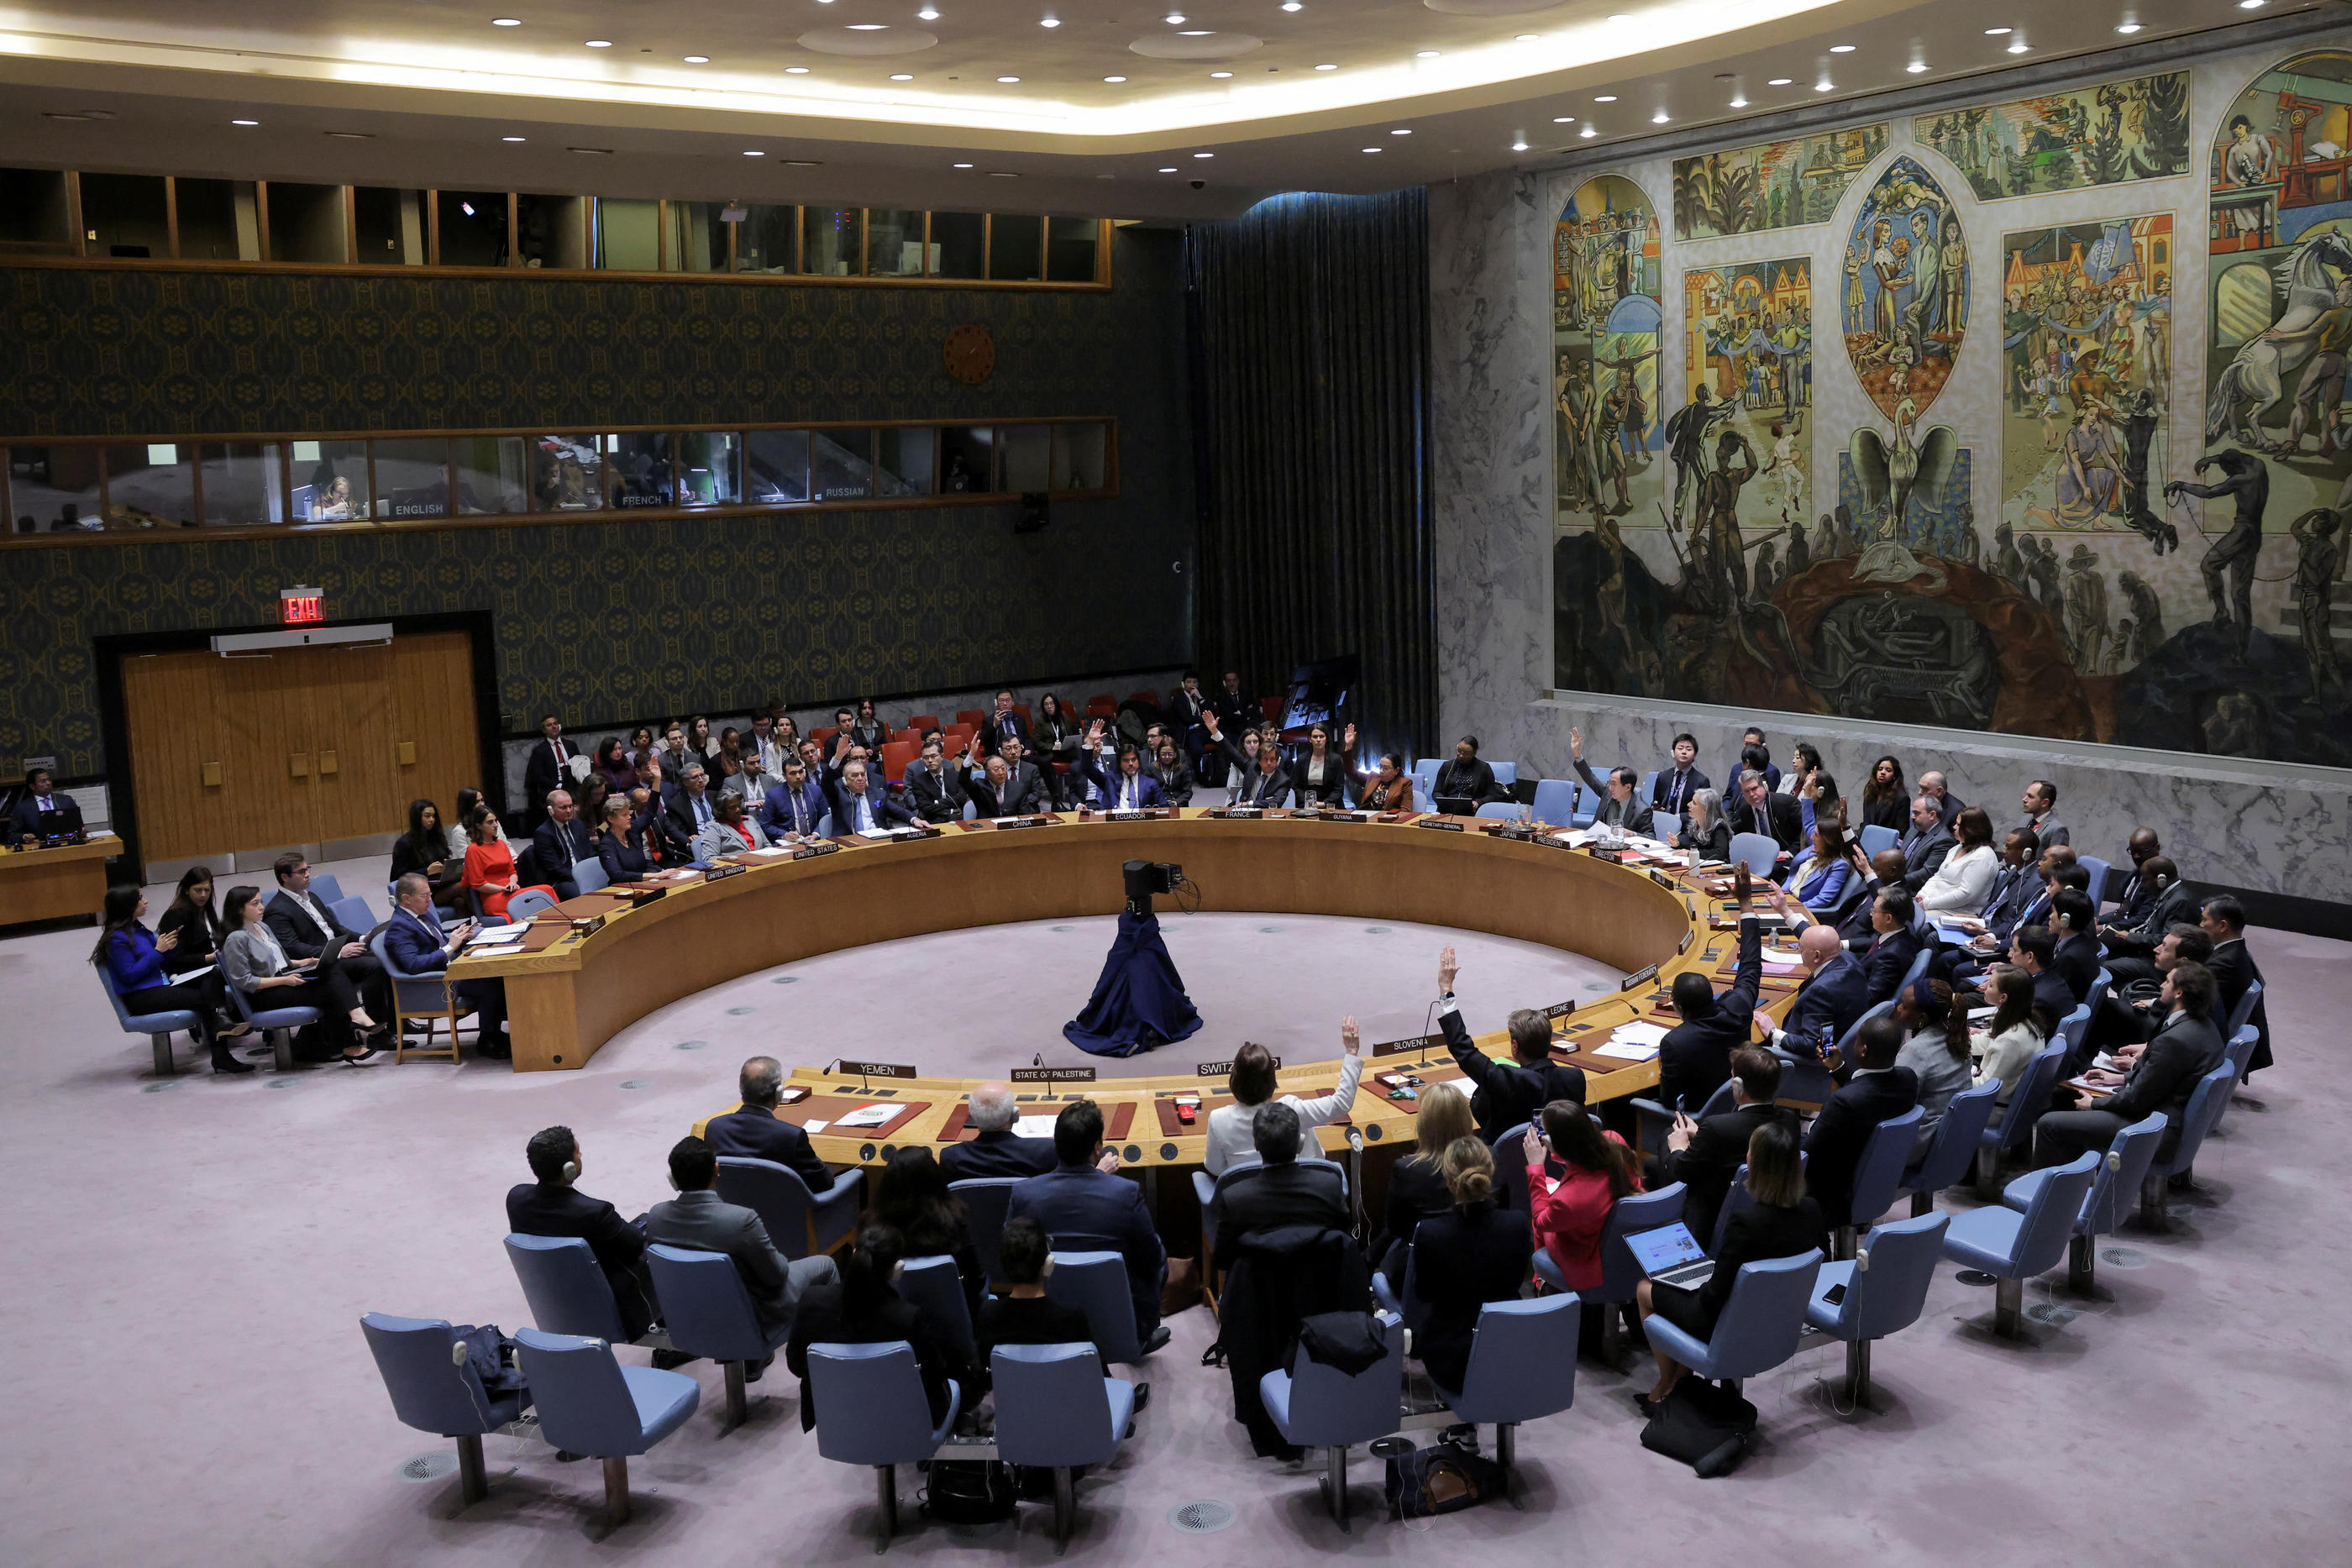 Le 25 mars, à New York, le Conseil de sécurité de l'ONU a adopté une résolution appelant à un «cessez-le-feu» immédiat à Gaza pendant le mois de Ramadan, les États-Unis s'étant abstenus. Reuters/Andrew Kelly